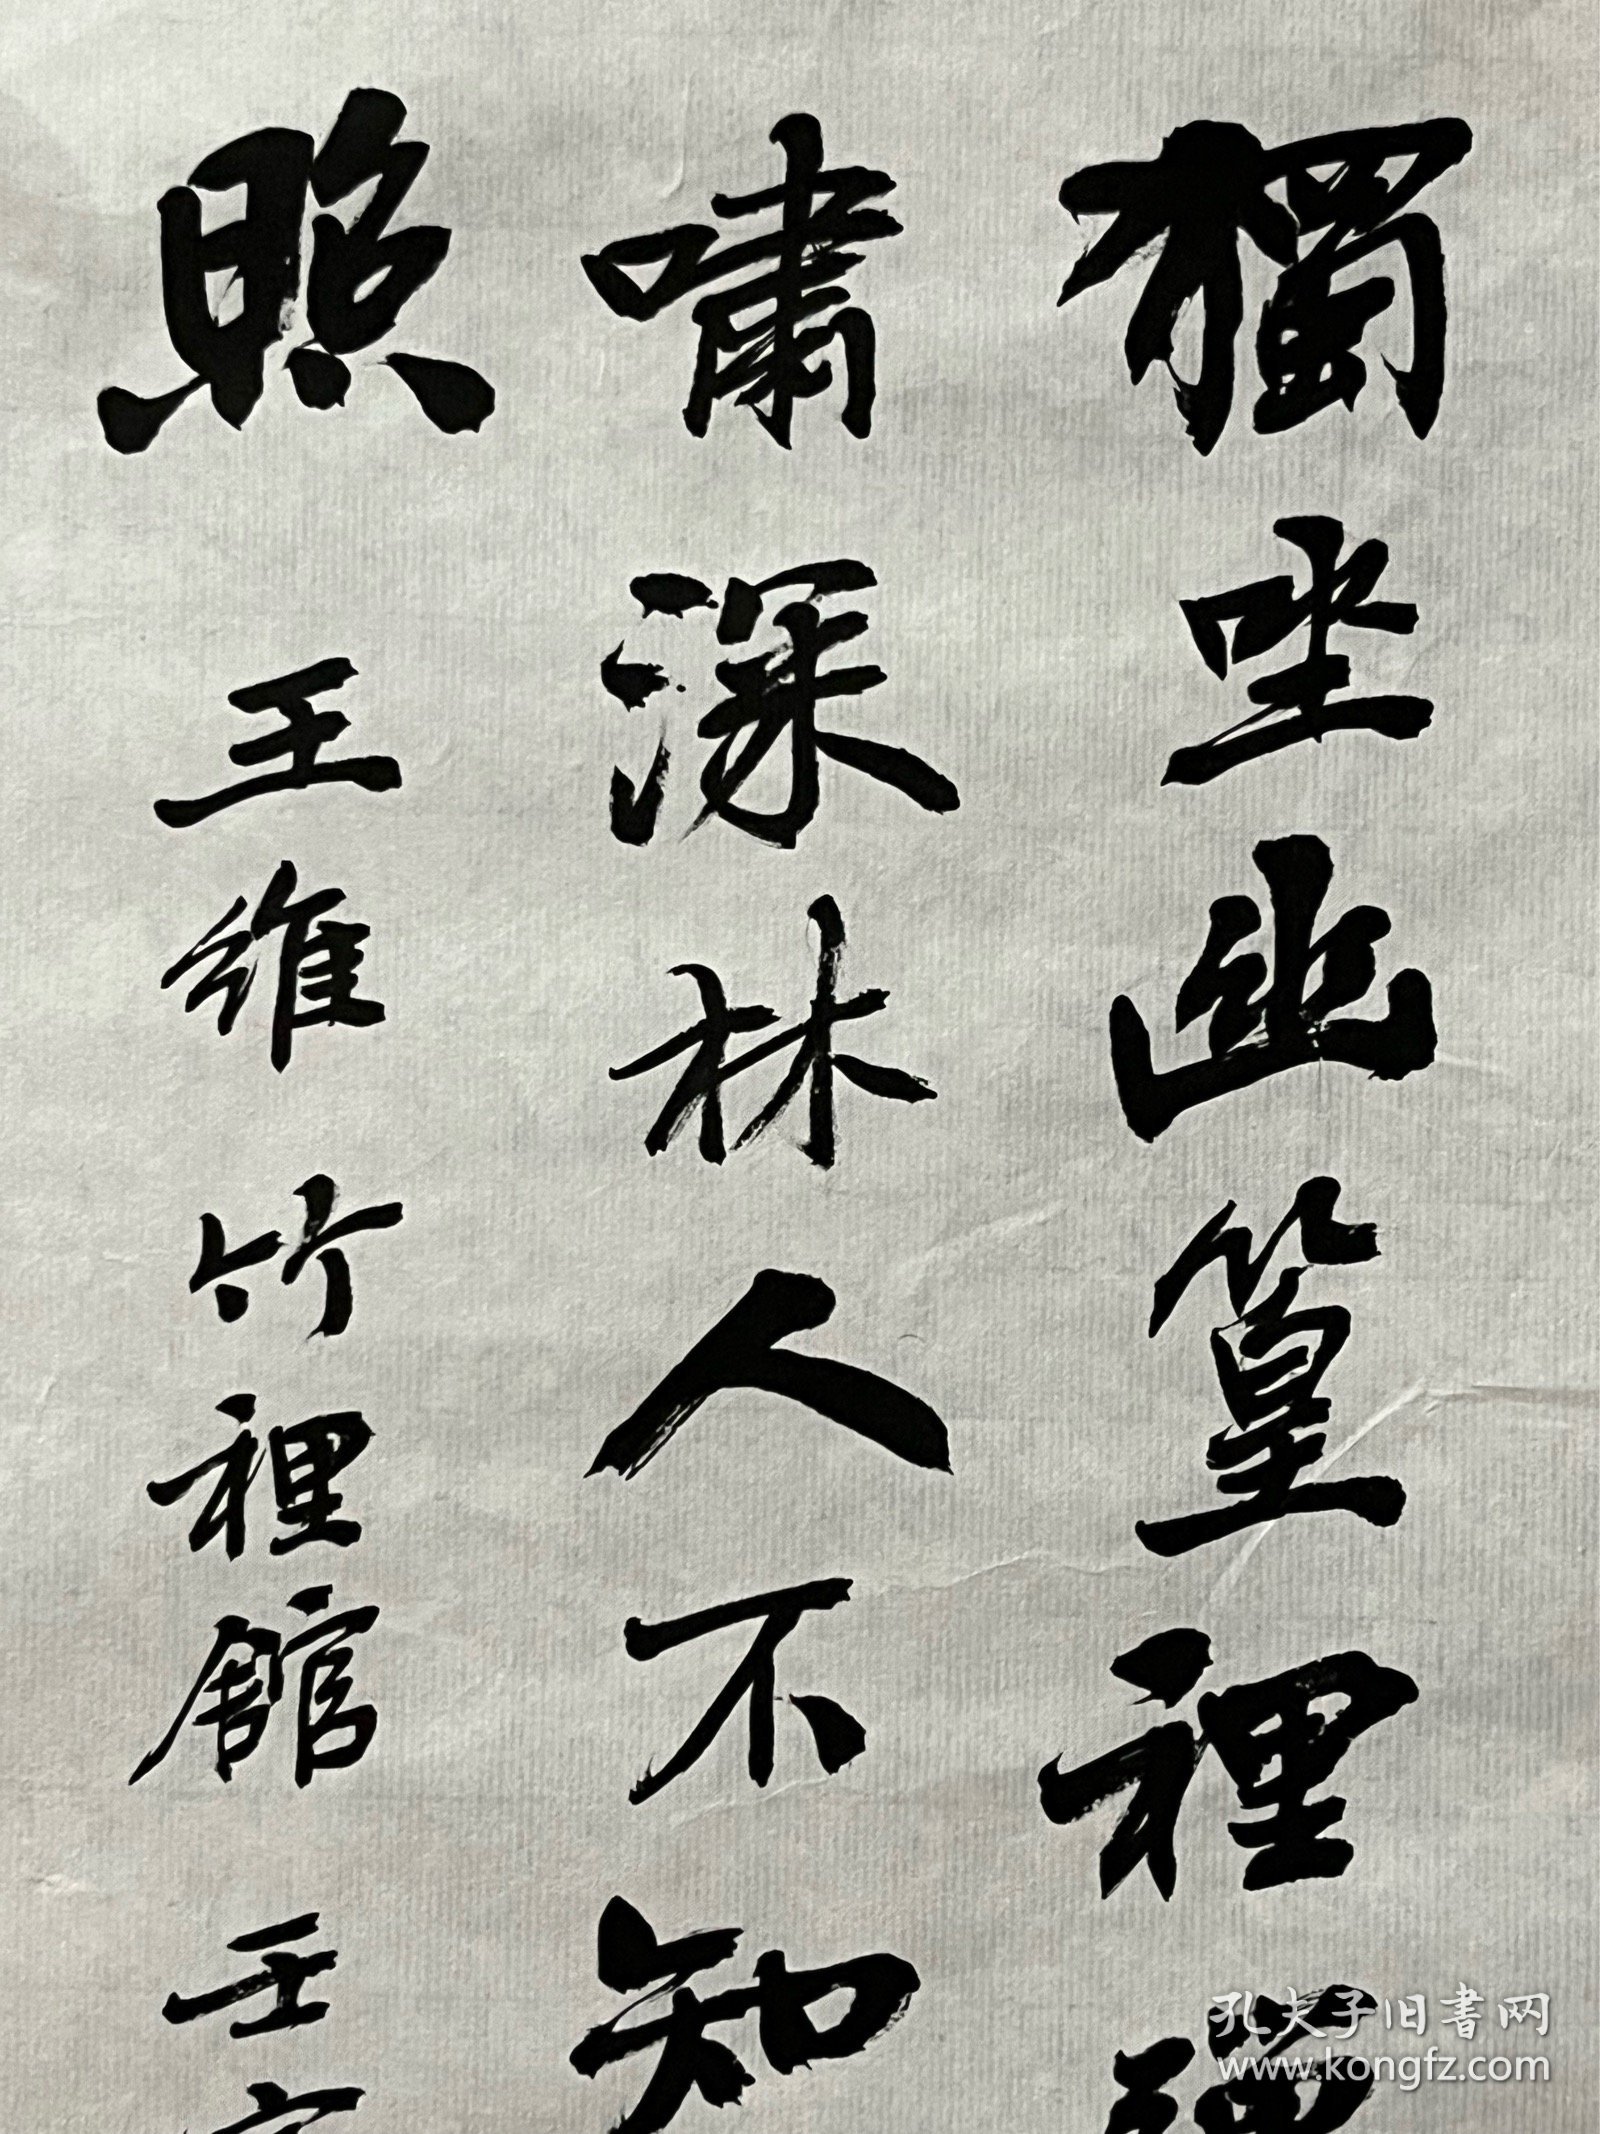 陈升阳老师手写书法小品 王维《竹里馆》 20.7x44.5cm